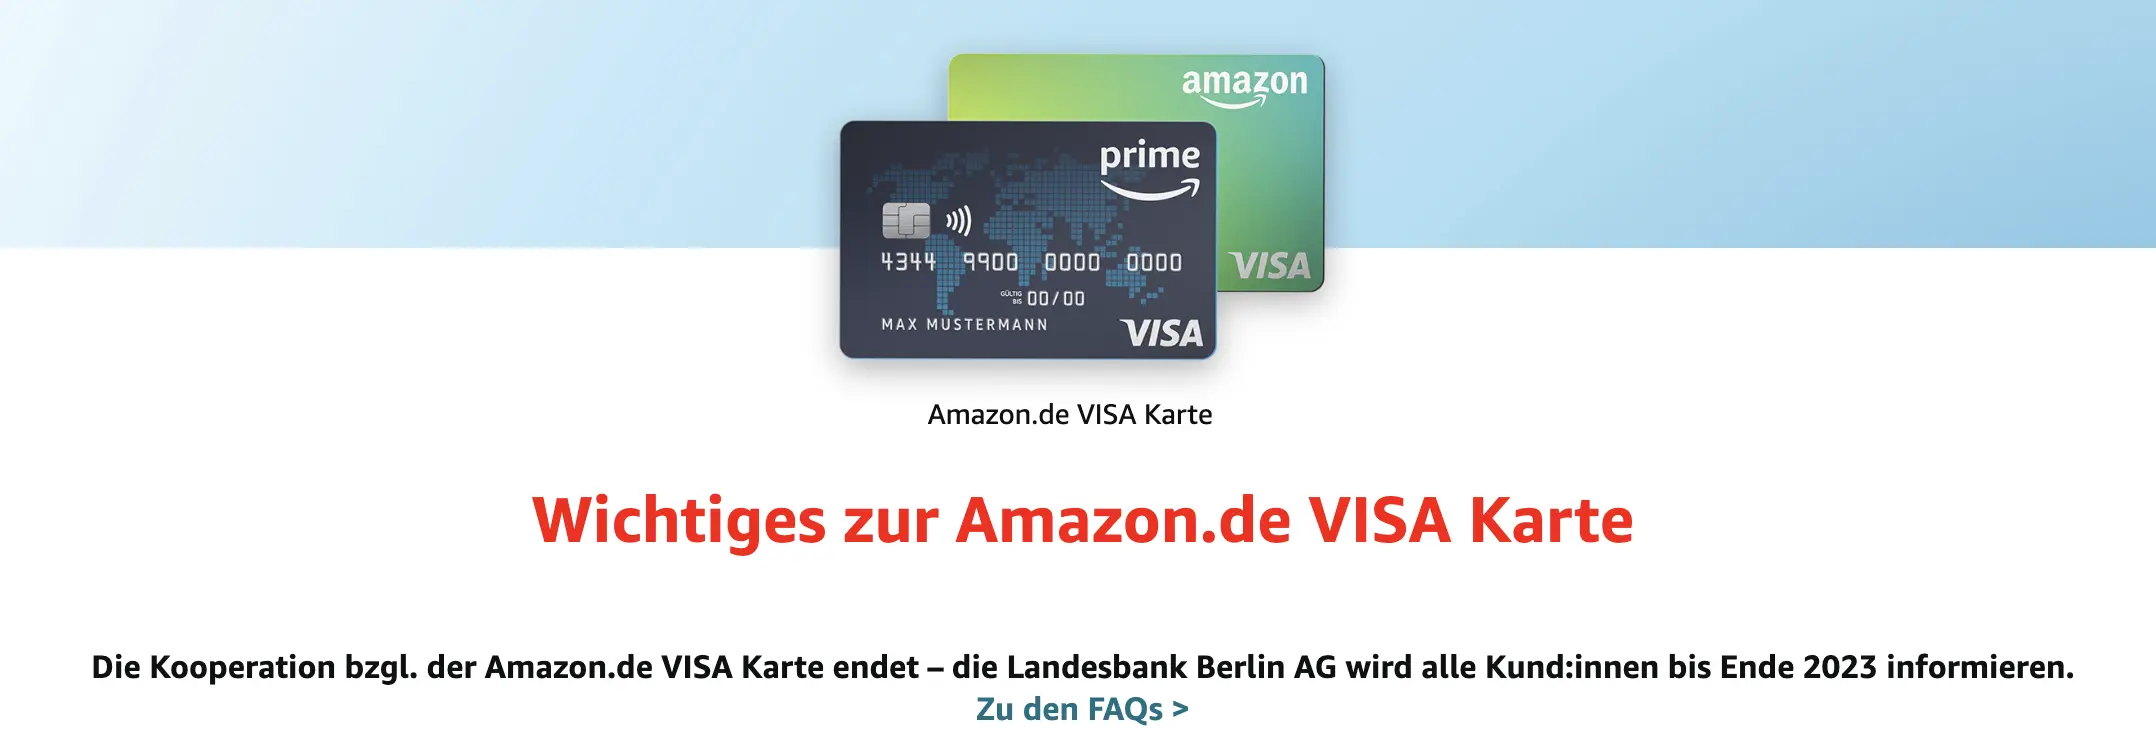 amazon kreditkarte nachfolger